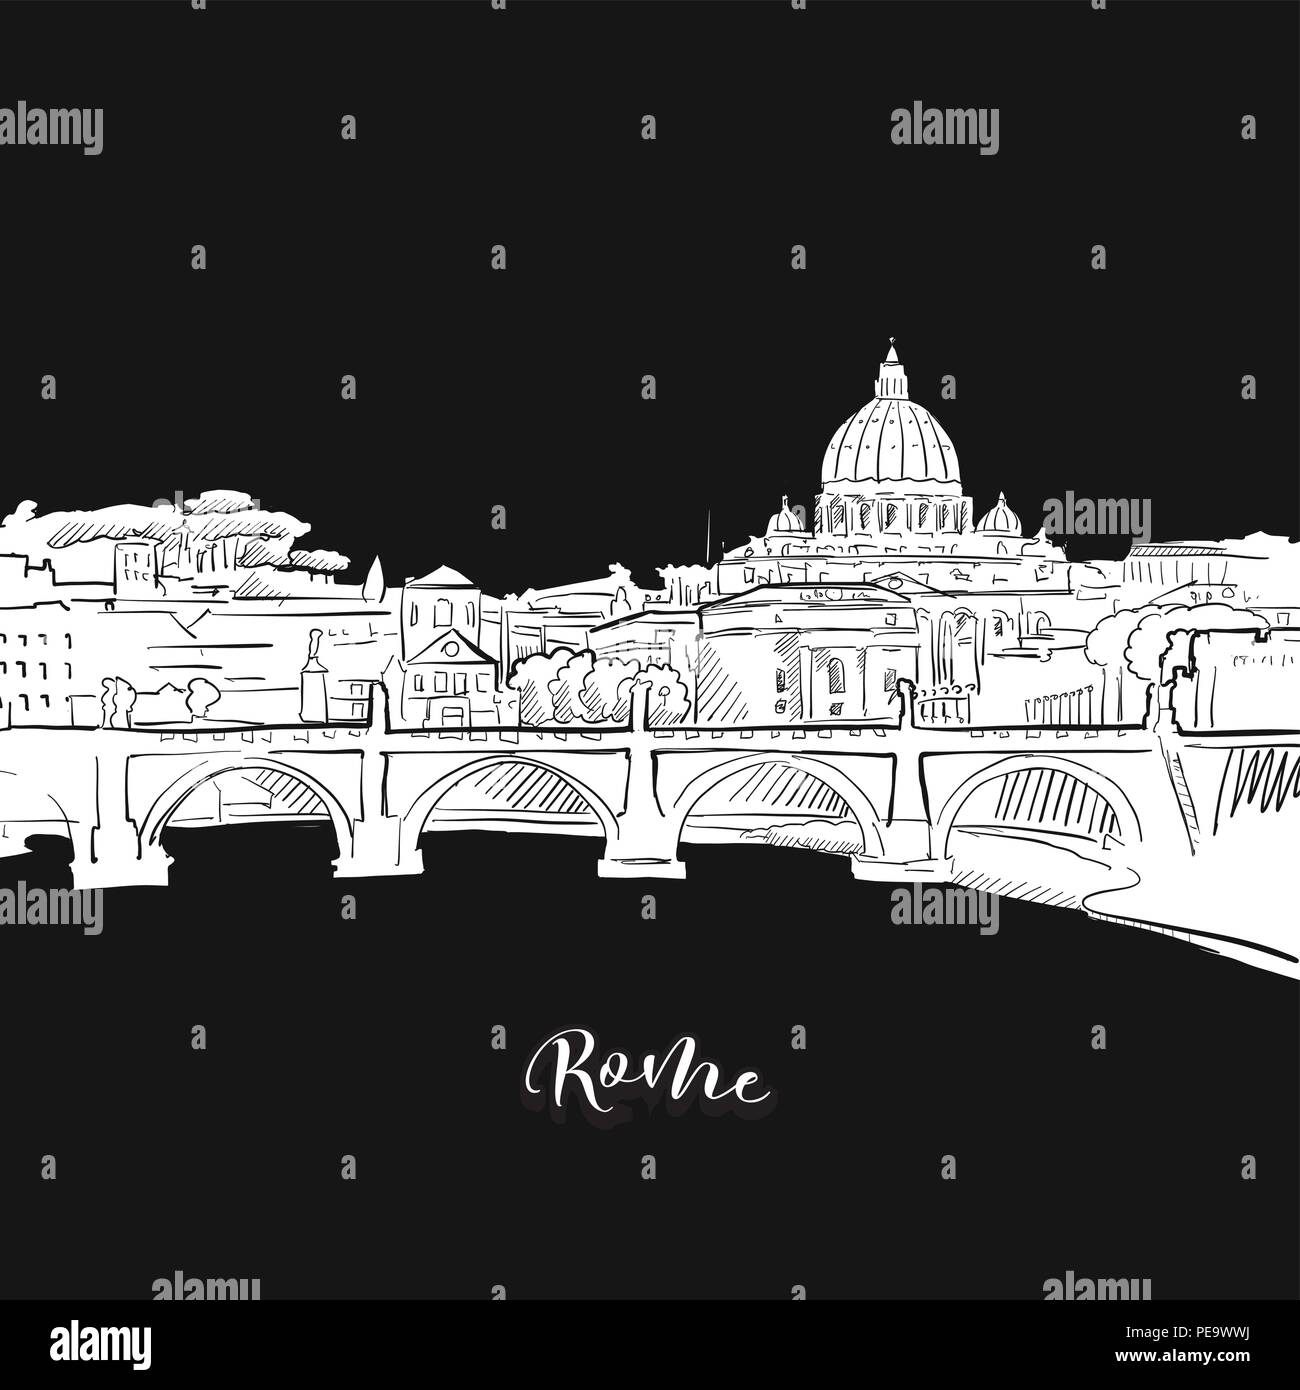 Vektor Zeichnung von Rom Skyline, skizzieren. Italien Reise Sehenswürdigkeit. Schwarze und weiße Abdeckung und Hintergrund Konzept. Stock Vektor